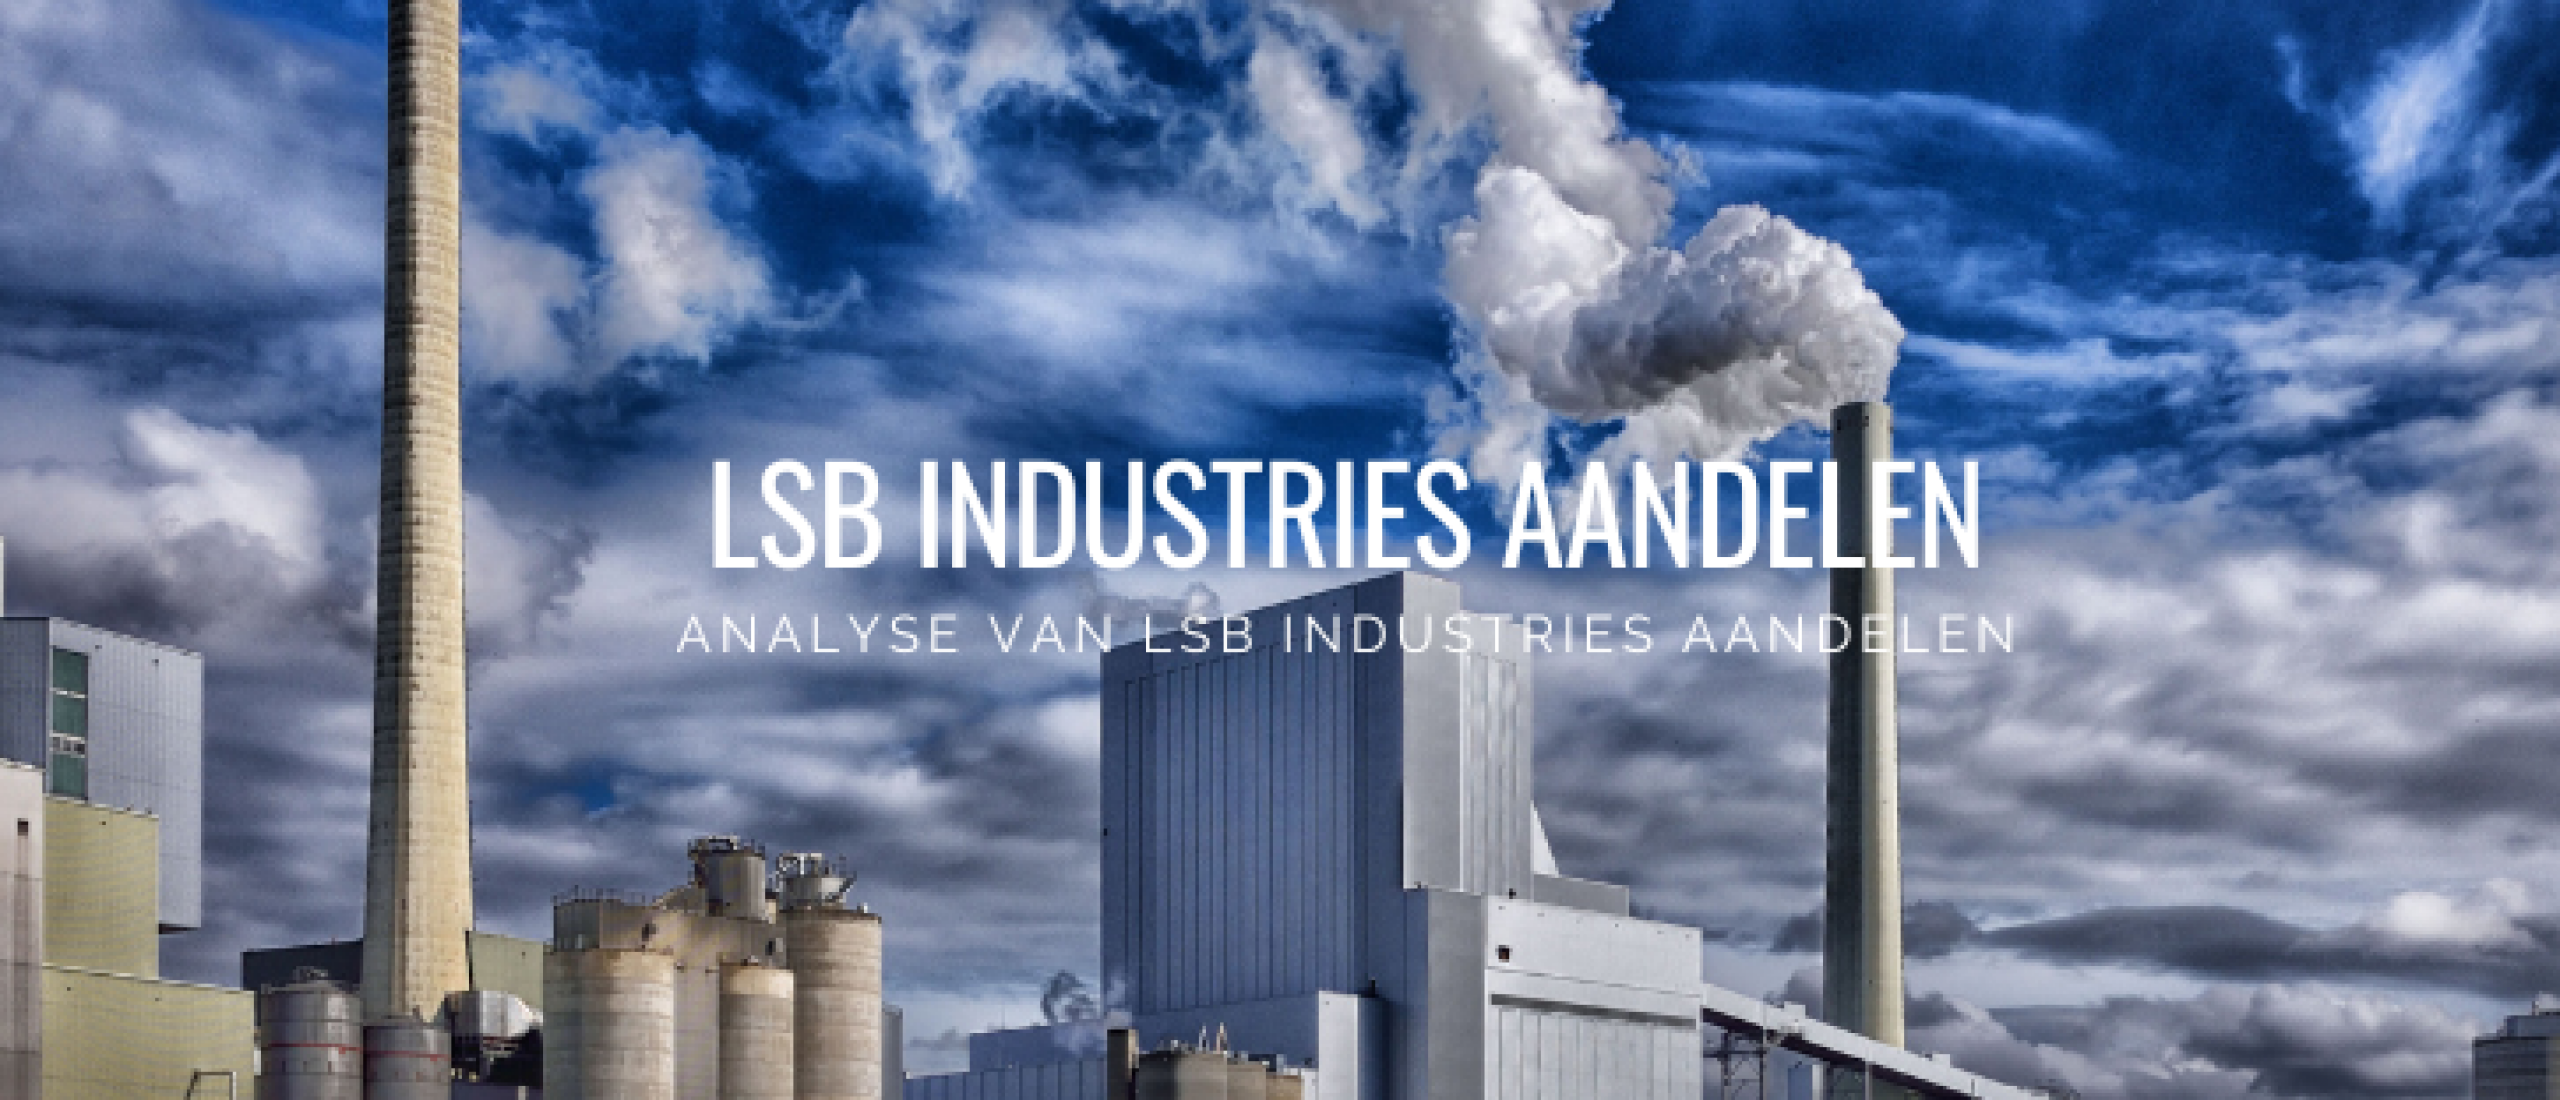 LSB Industries Aandelen kopen? Analyse +62% Groei | Happy Investors